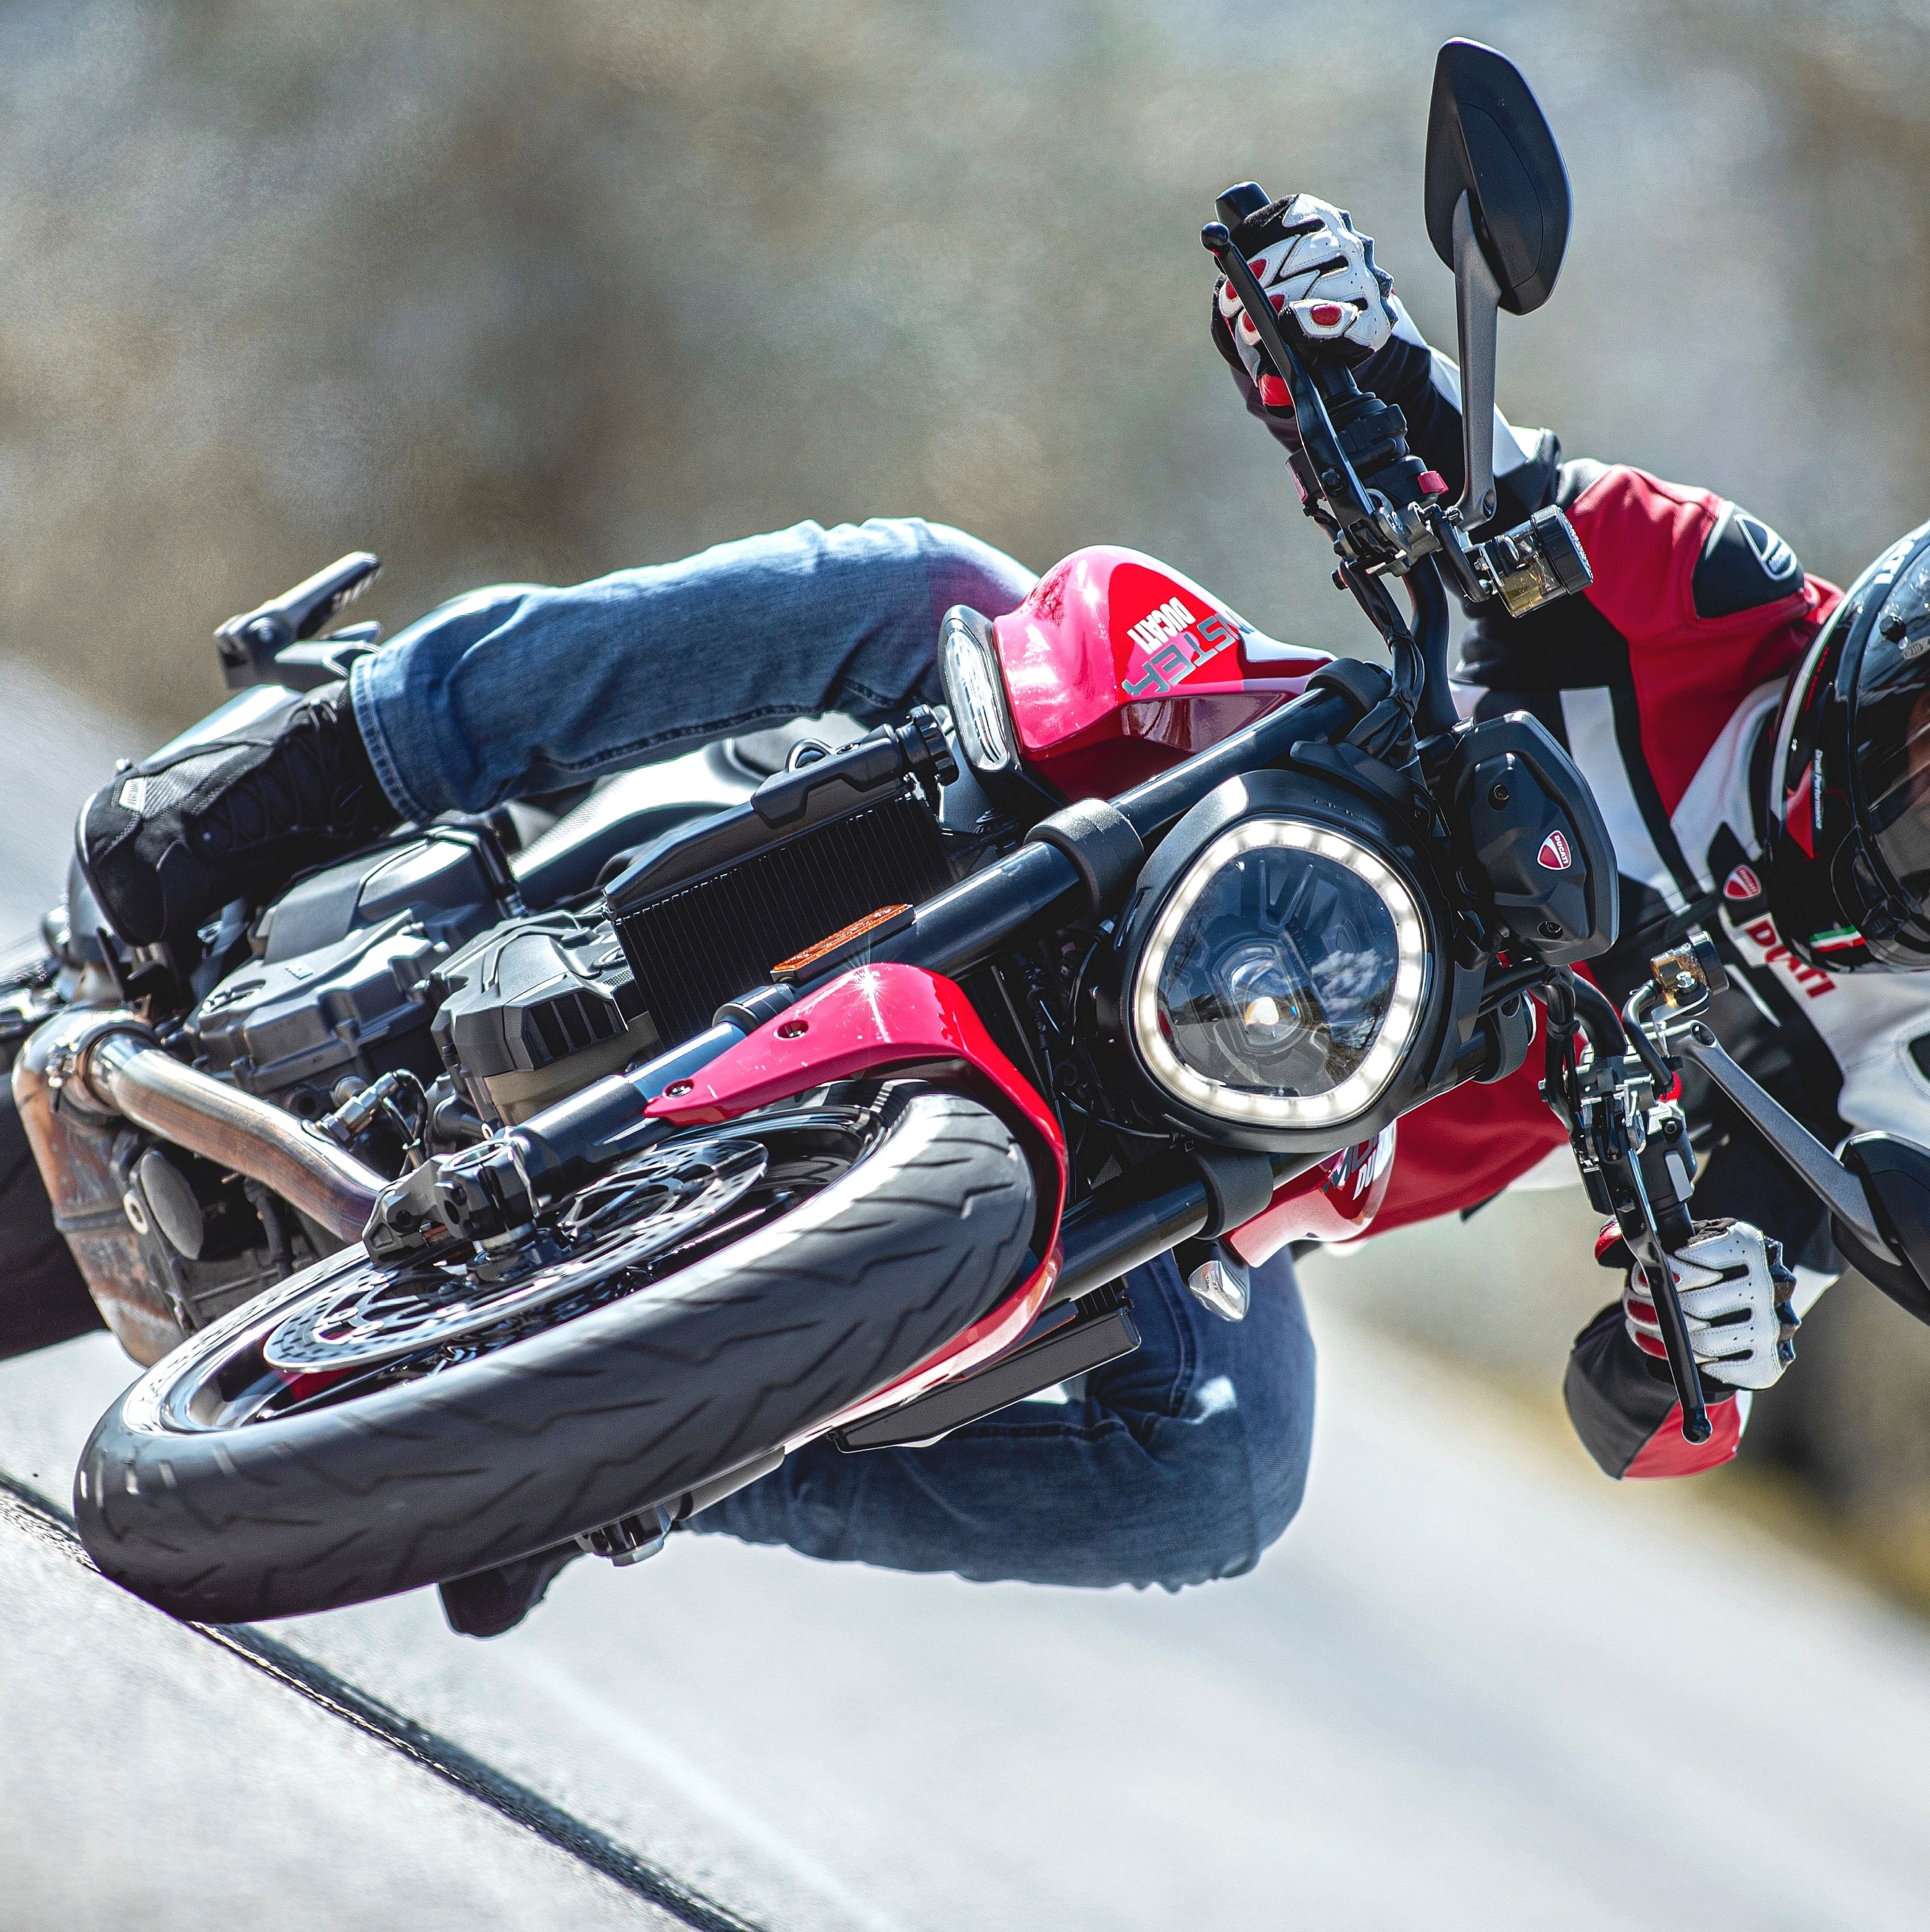 Nova moto da Ducati chega ao Brasil custando mais que um apartamento